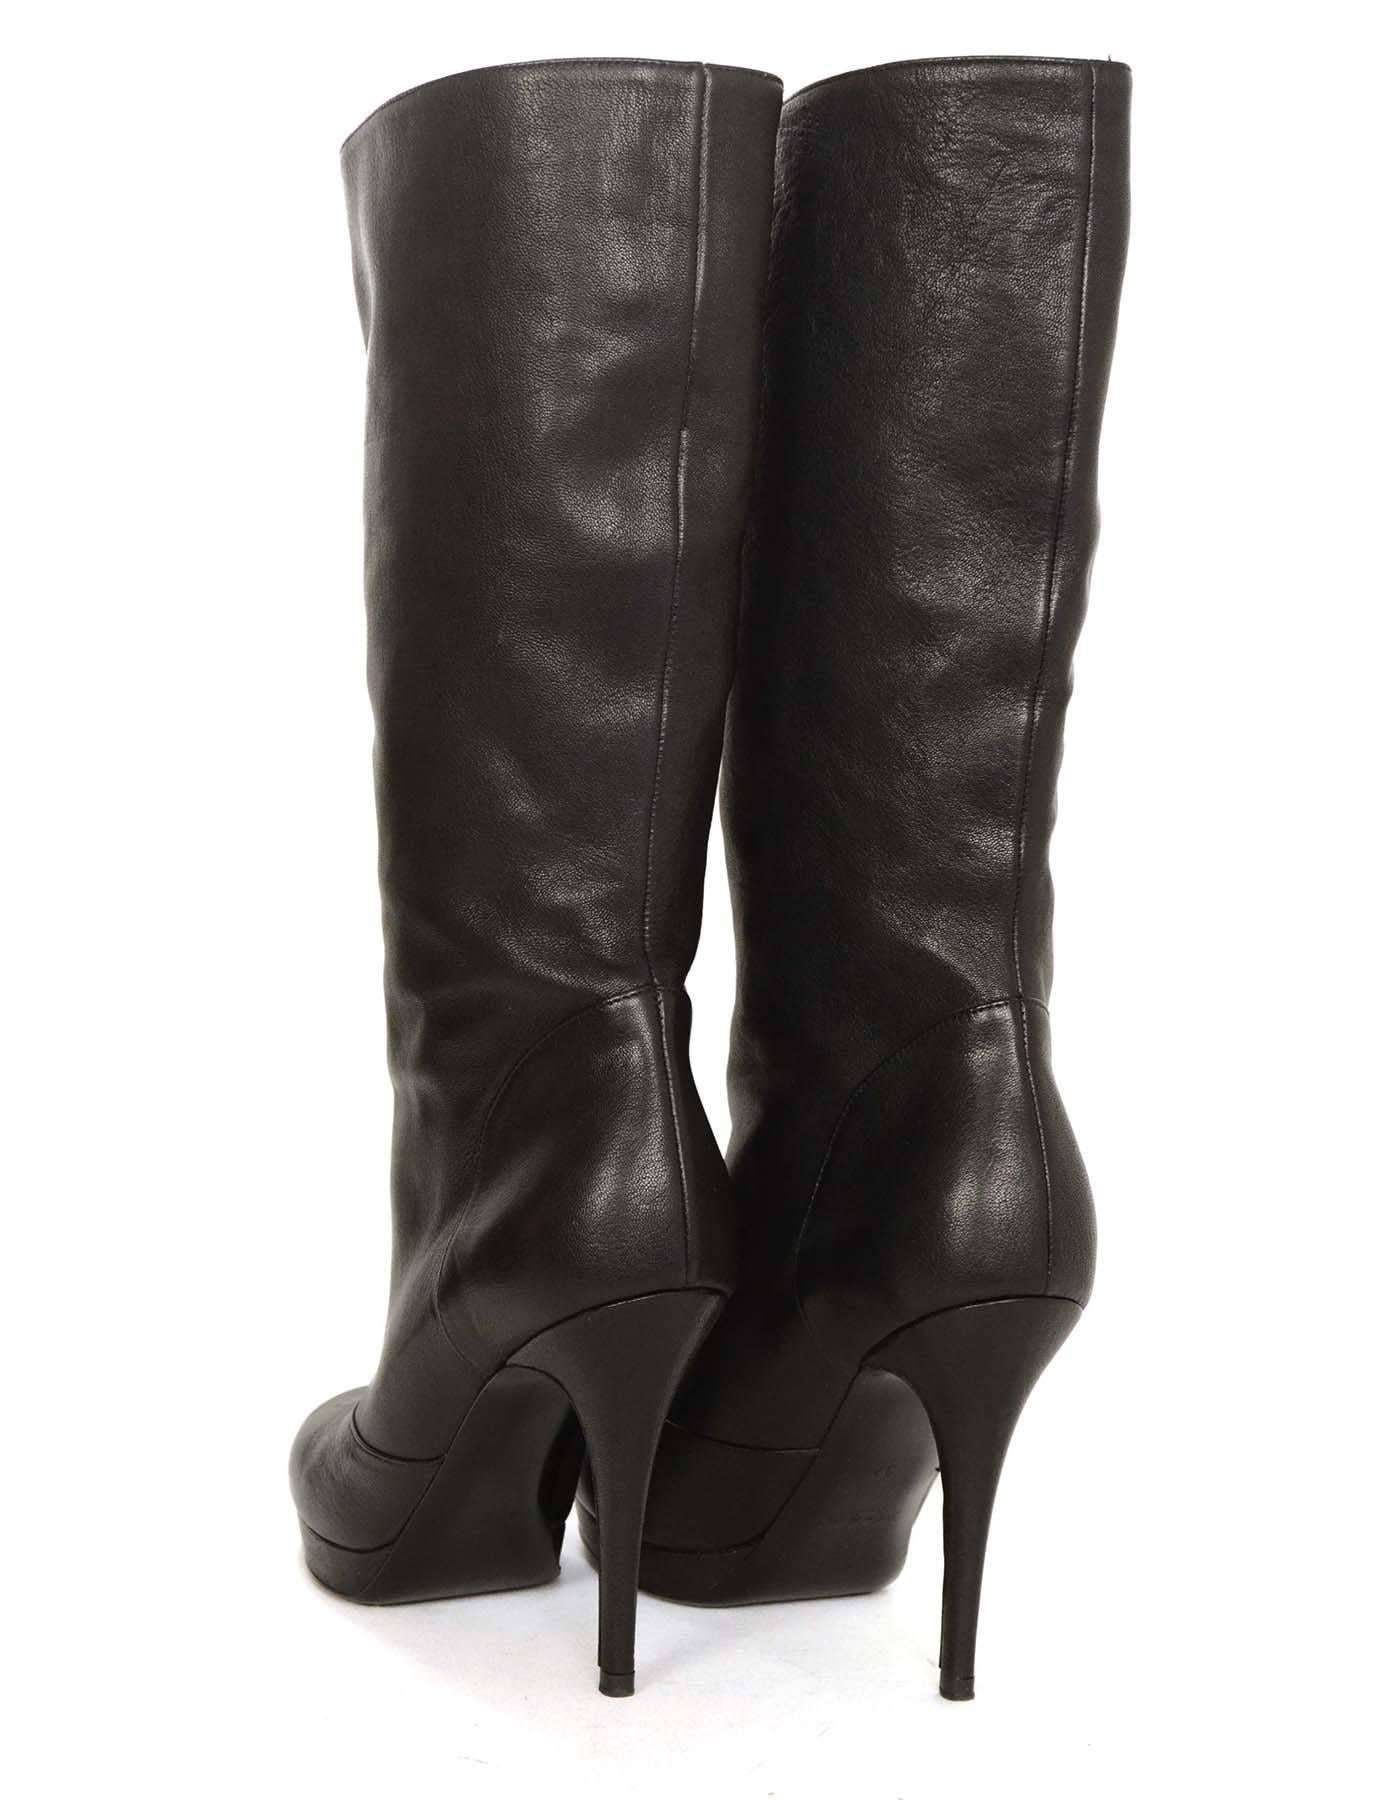 Yves Saint Laurent YSL Black Leather Boots sz 37 1